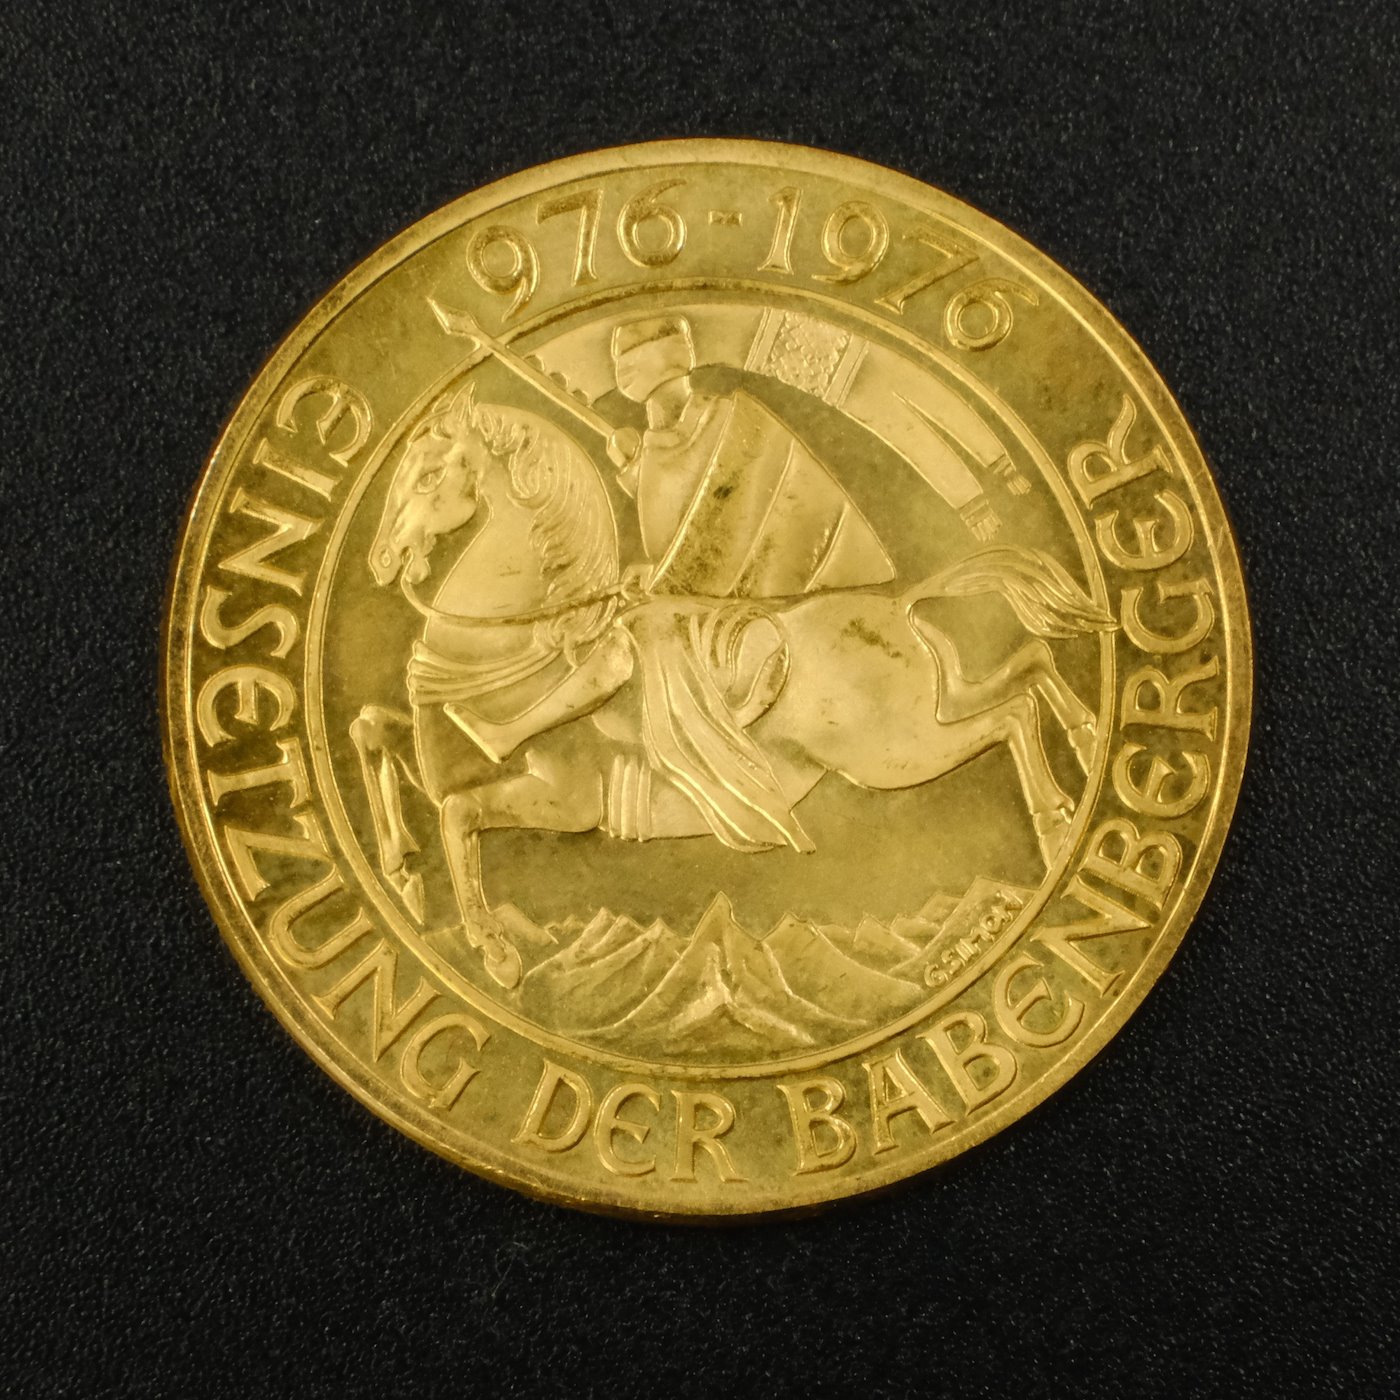 Mince - Zlatá mince Babenberkové 1000 let 976-1976, zlato 900/1000, hmotnost hrubá 13,5g